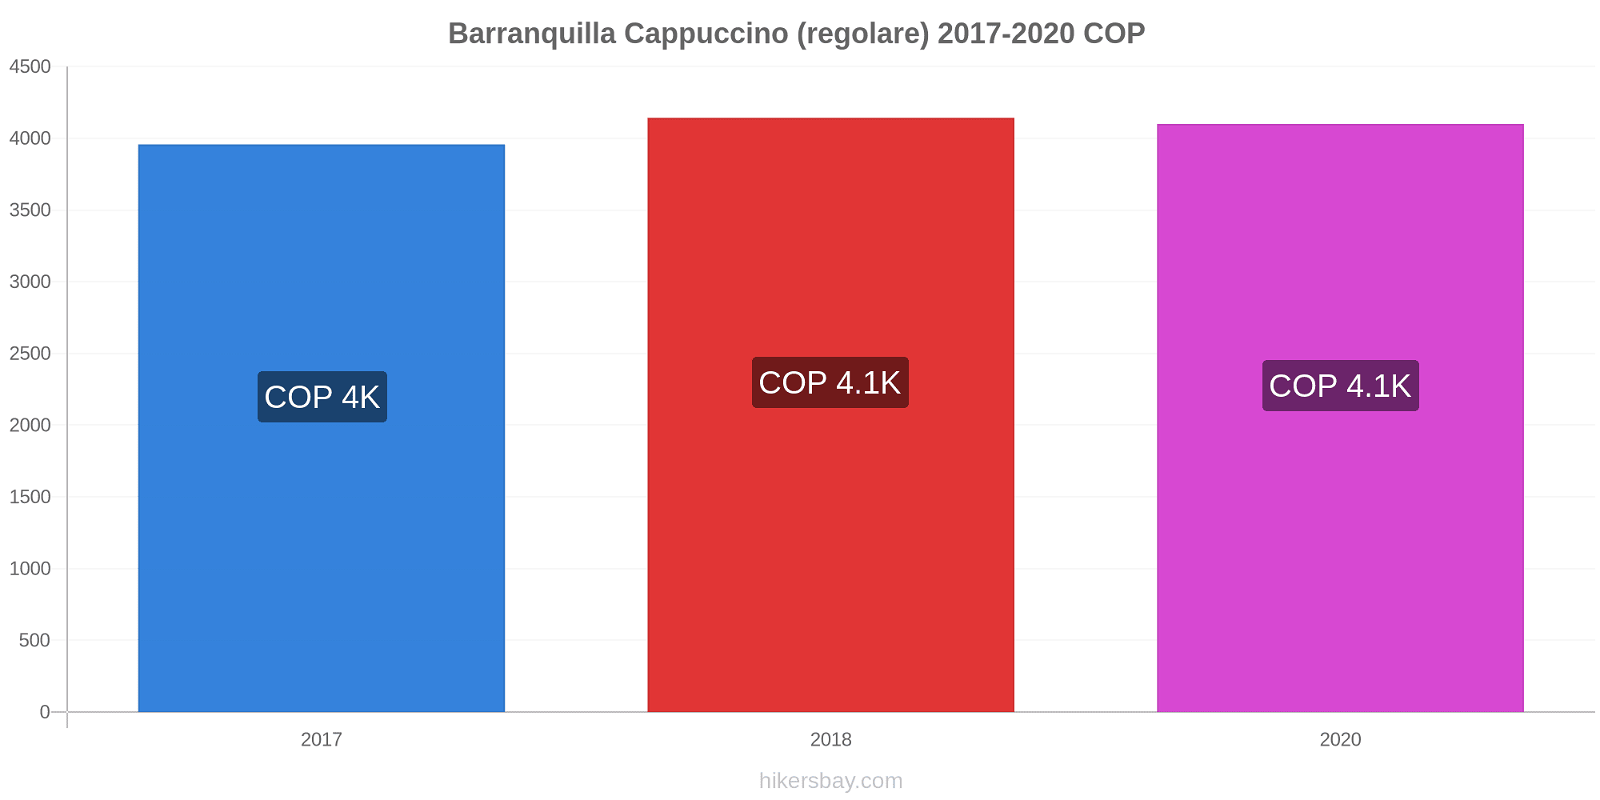 Barranquilla variazioni di prezzo Cappuccino (normale) hikersbay.com